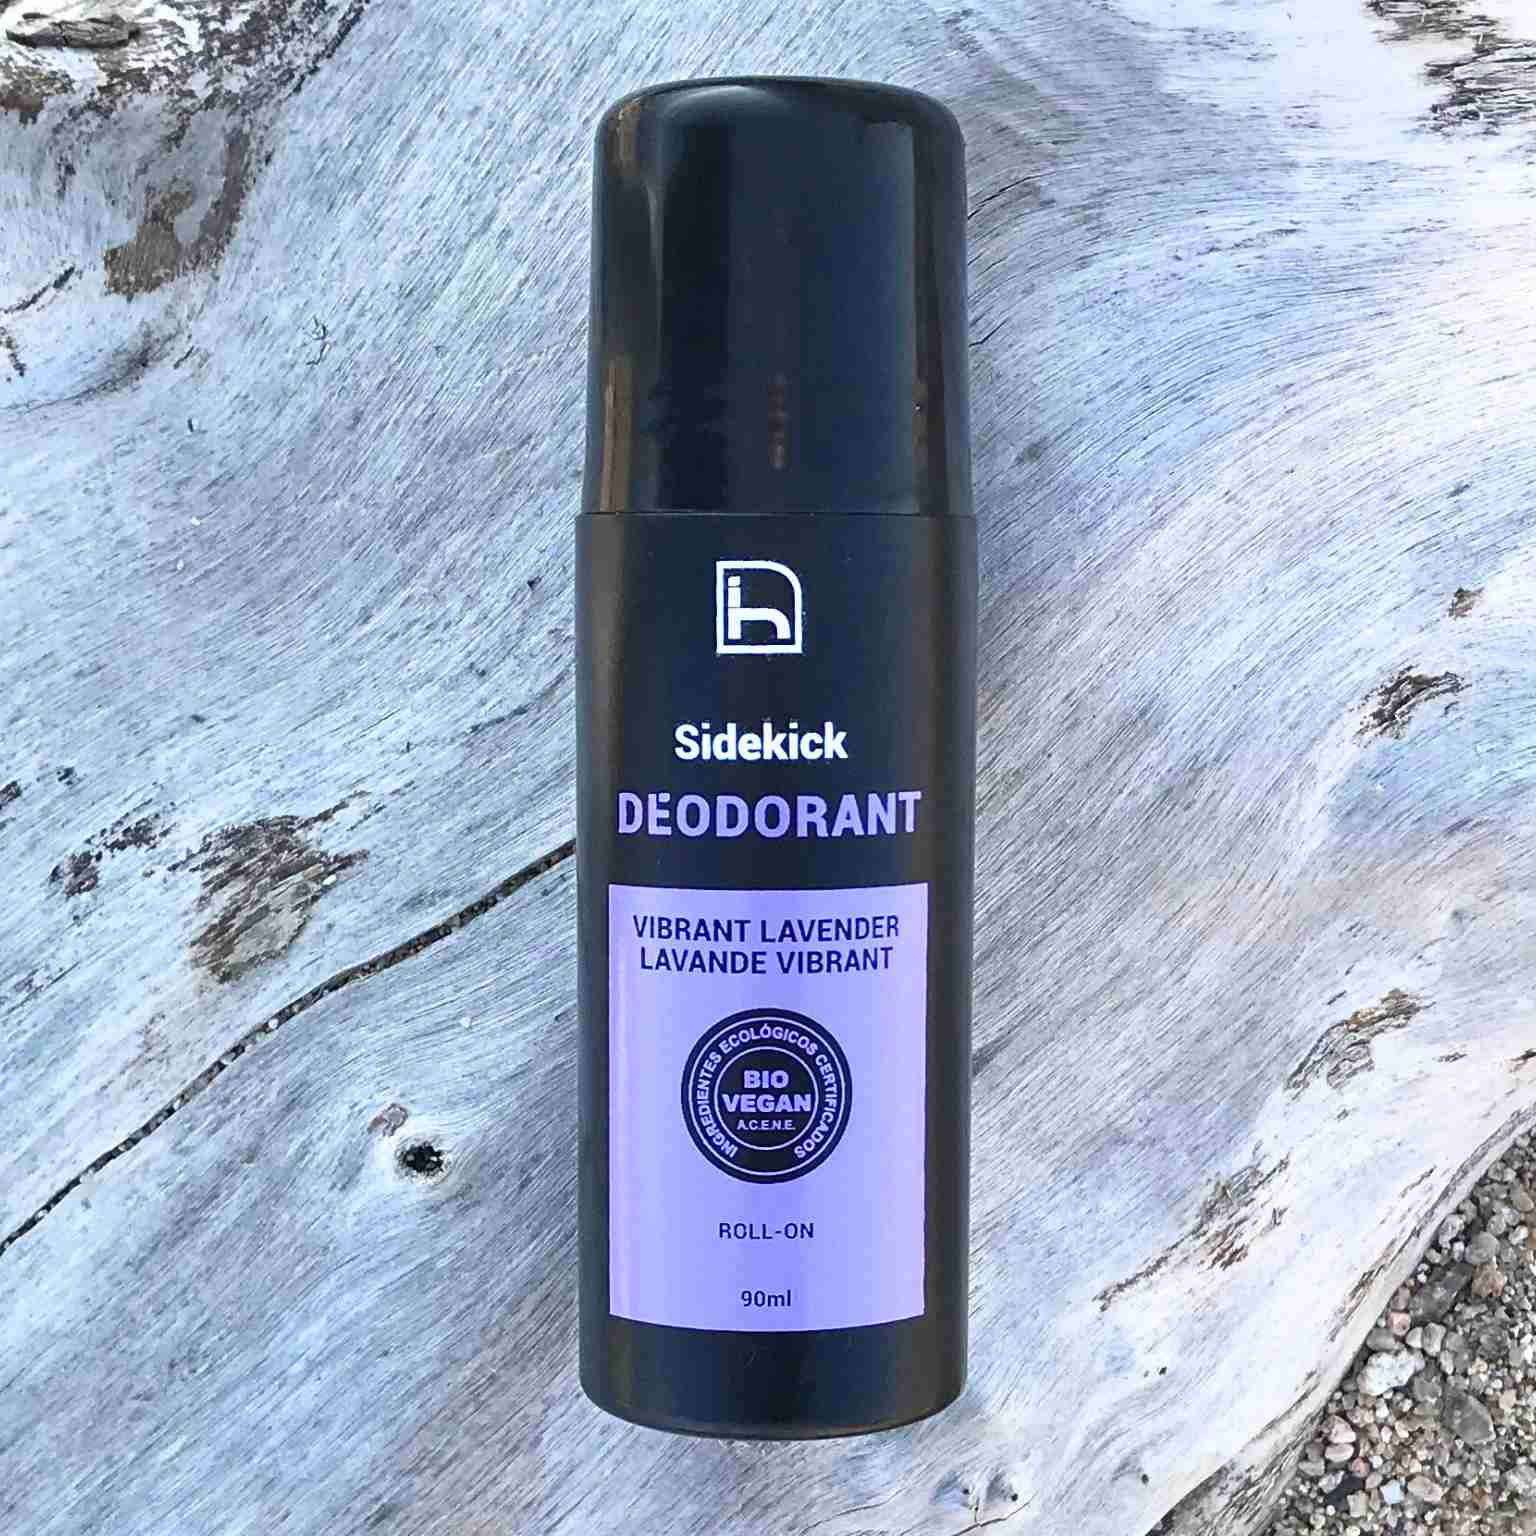 Desodorante ecologico sin alcohol. Con lavanda 100% natural